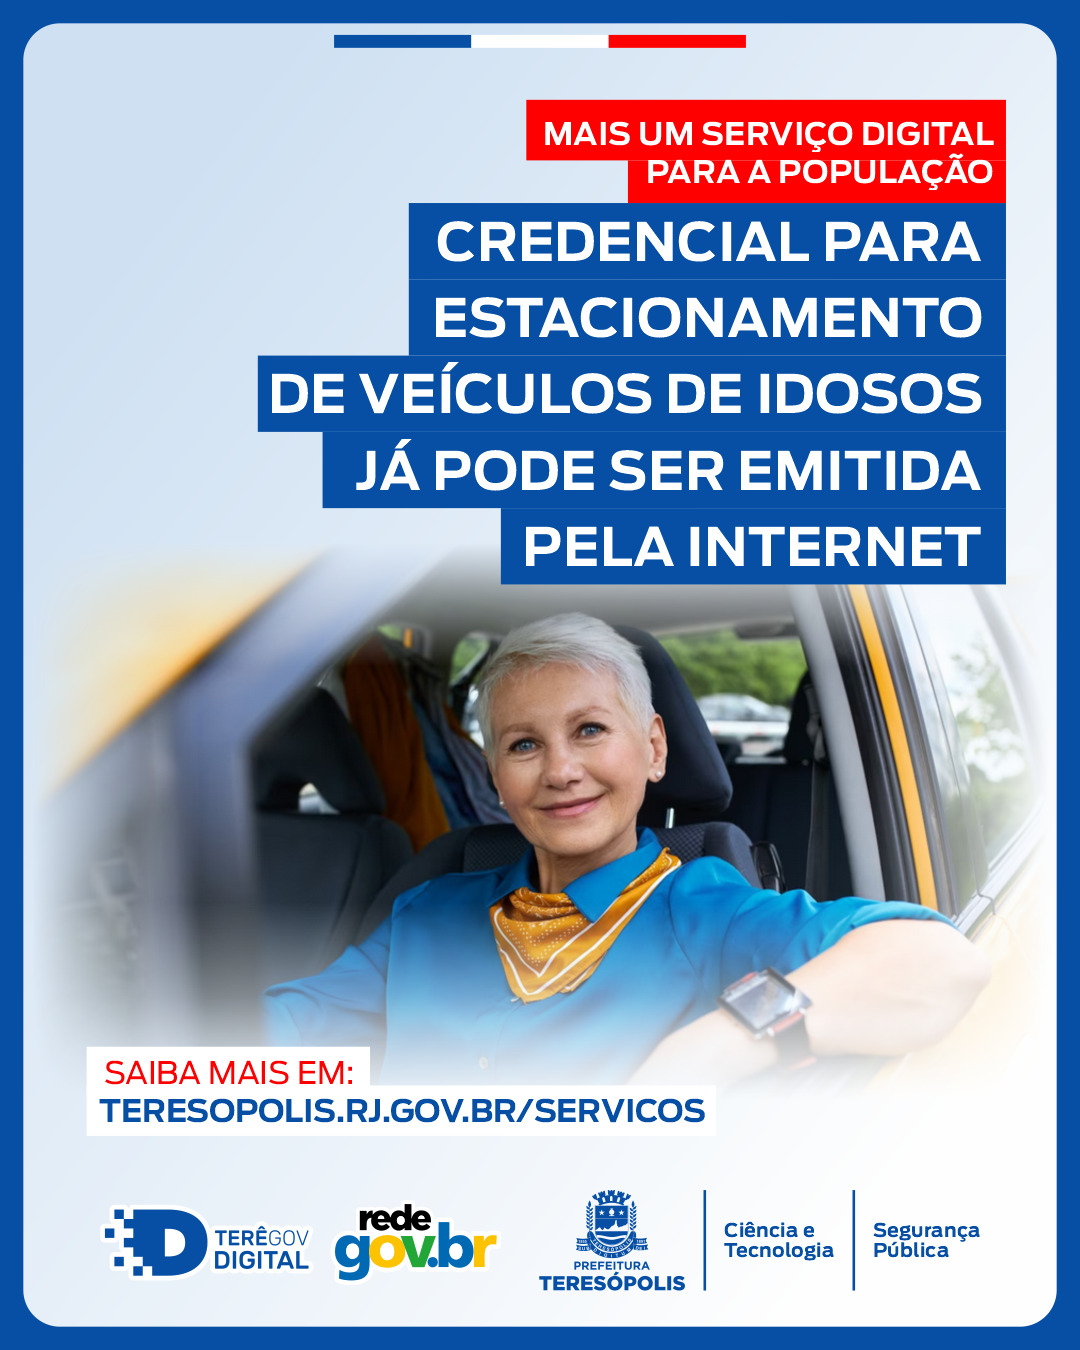 Você está visualizando atualmente Teresópolis na Rede Gov.Br: Credencial para estacionamento de veículos de idosos já pode ser emitida pela internet